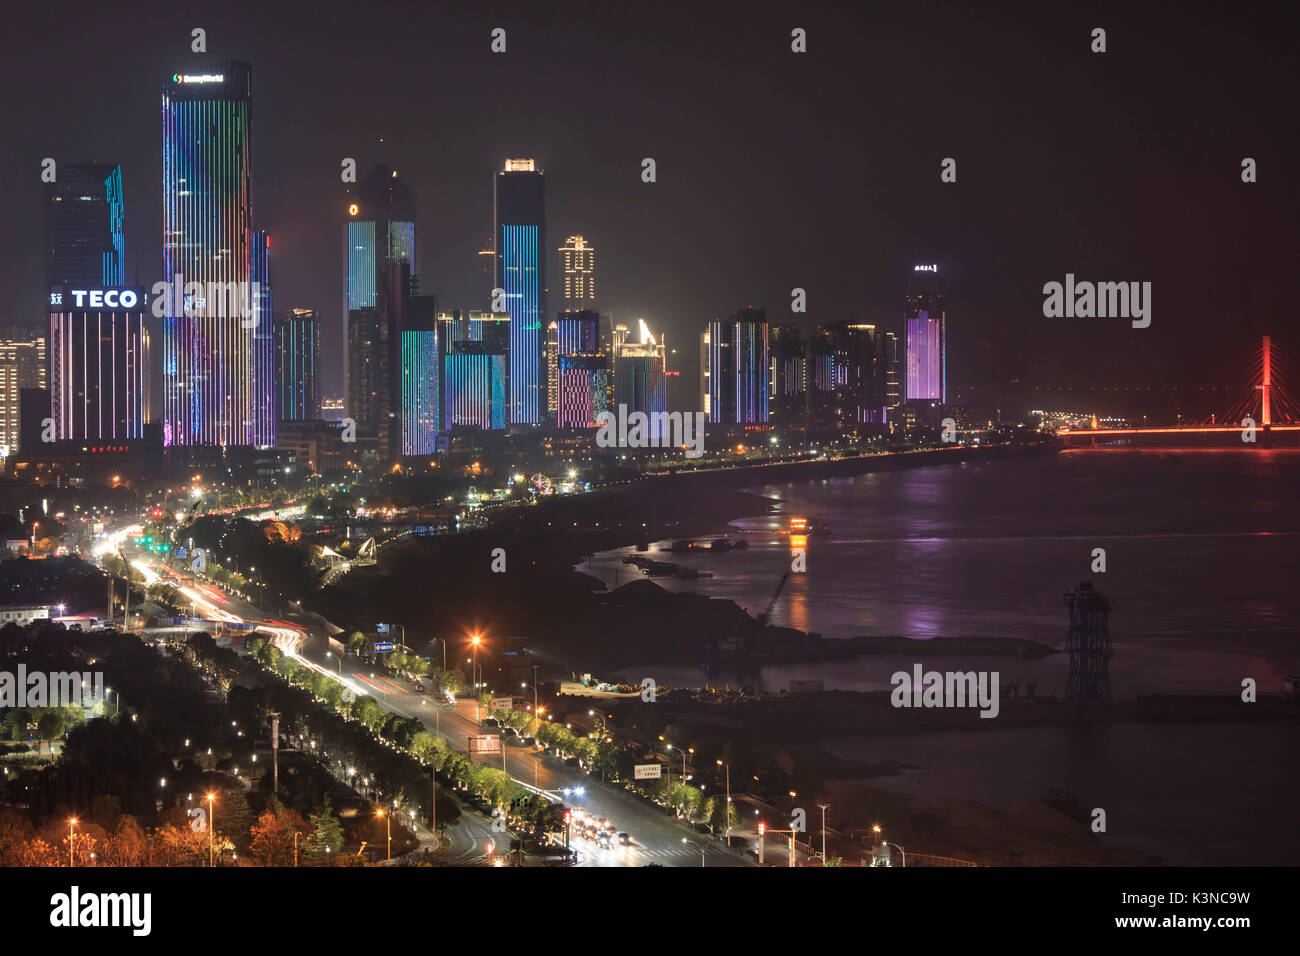 Vue panoramique de la ville de Nanchang, capitale de la province de Jianxi en Chine, la nuit Banque D'Images